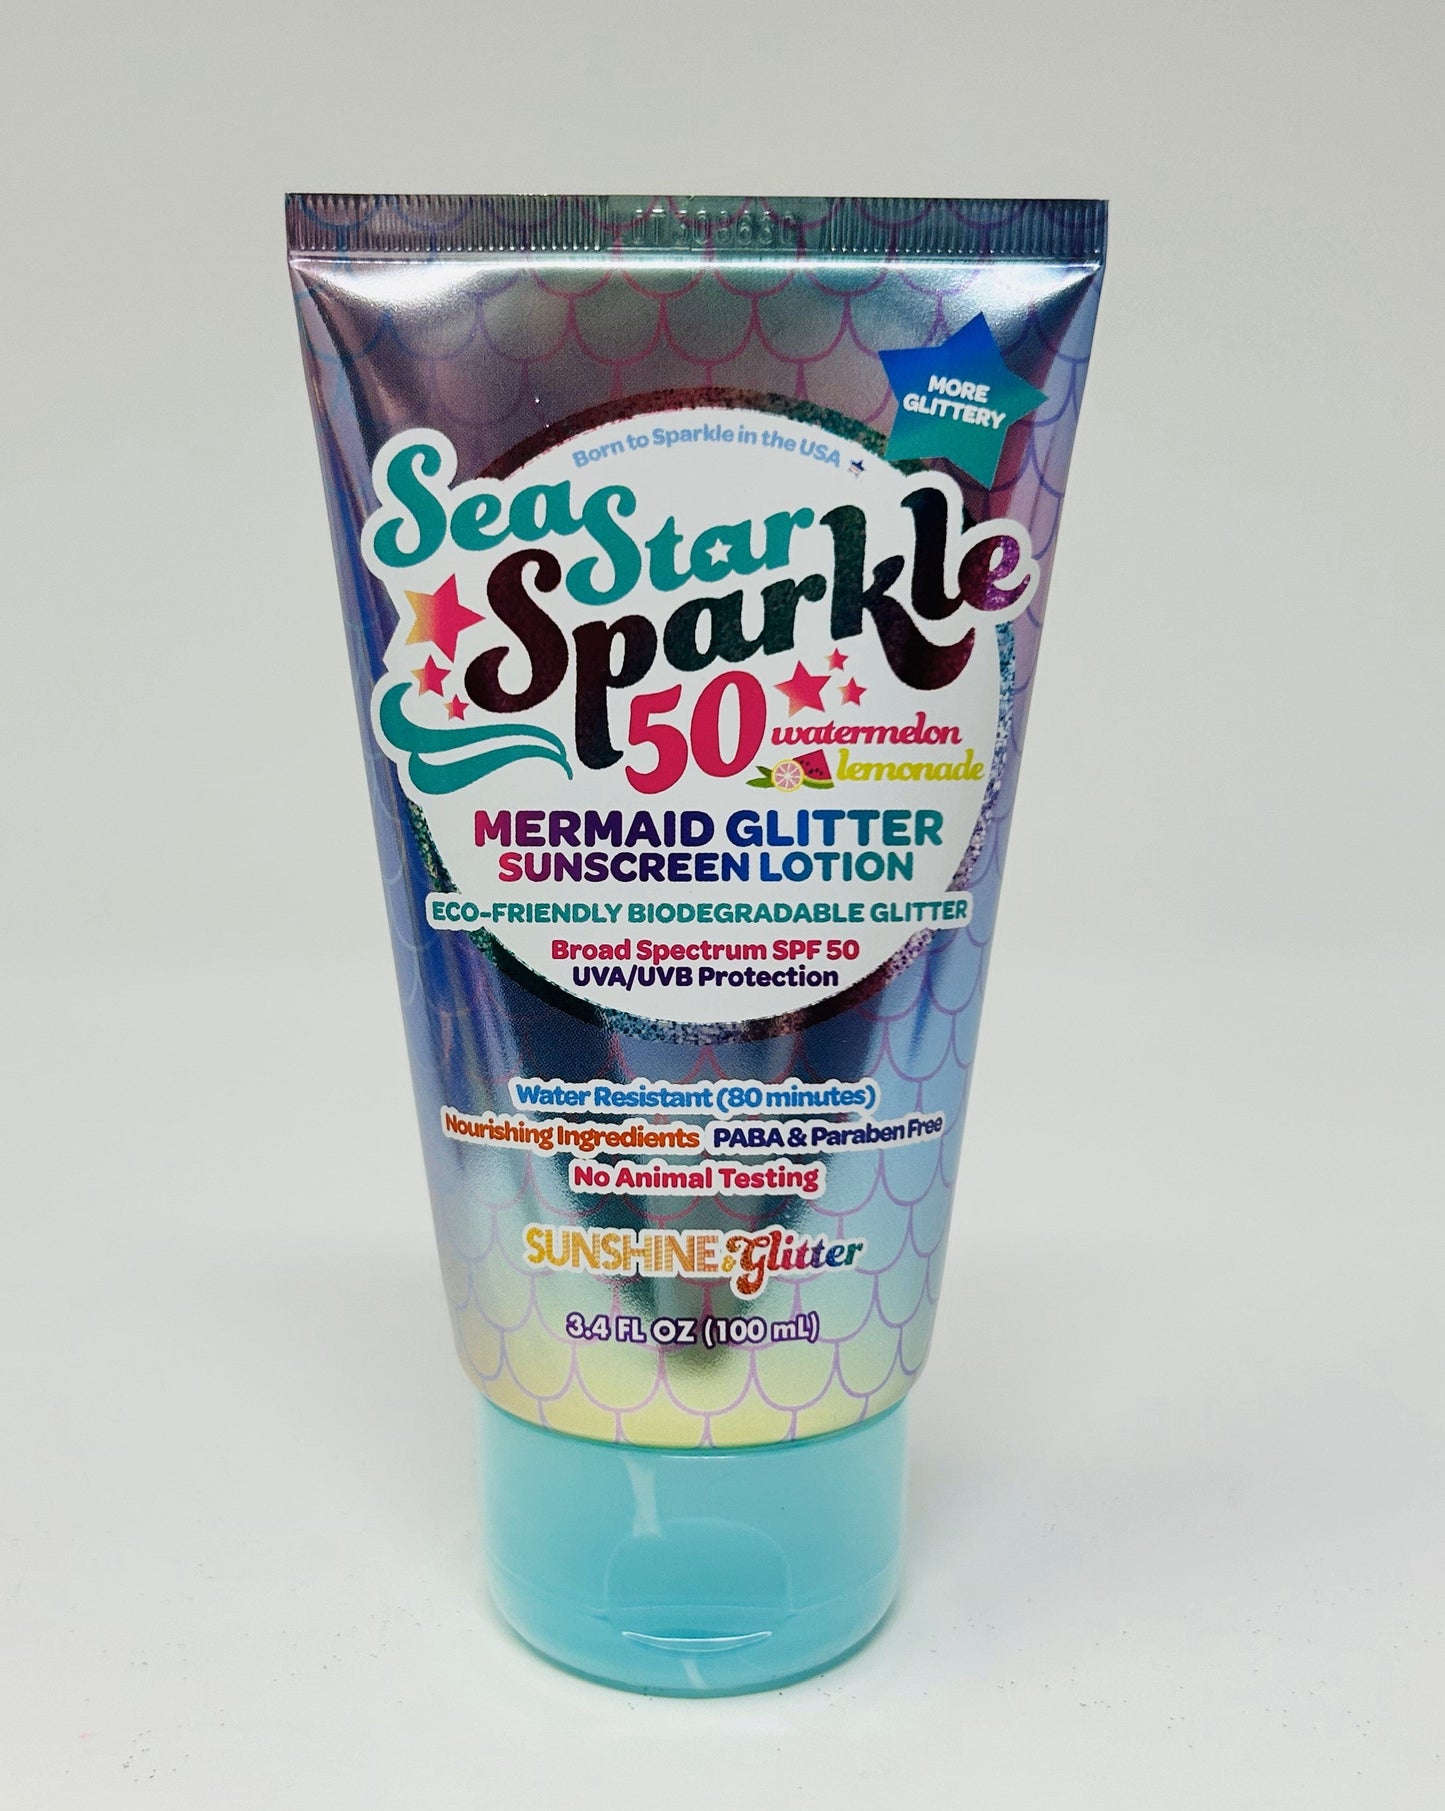 Sea Star Sparkle Sunscreen - Mermaid